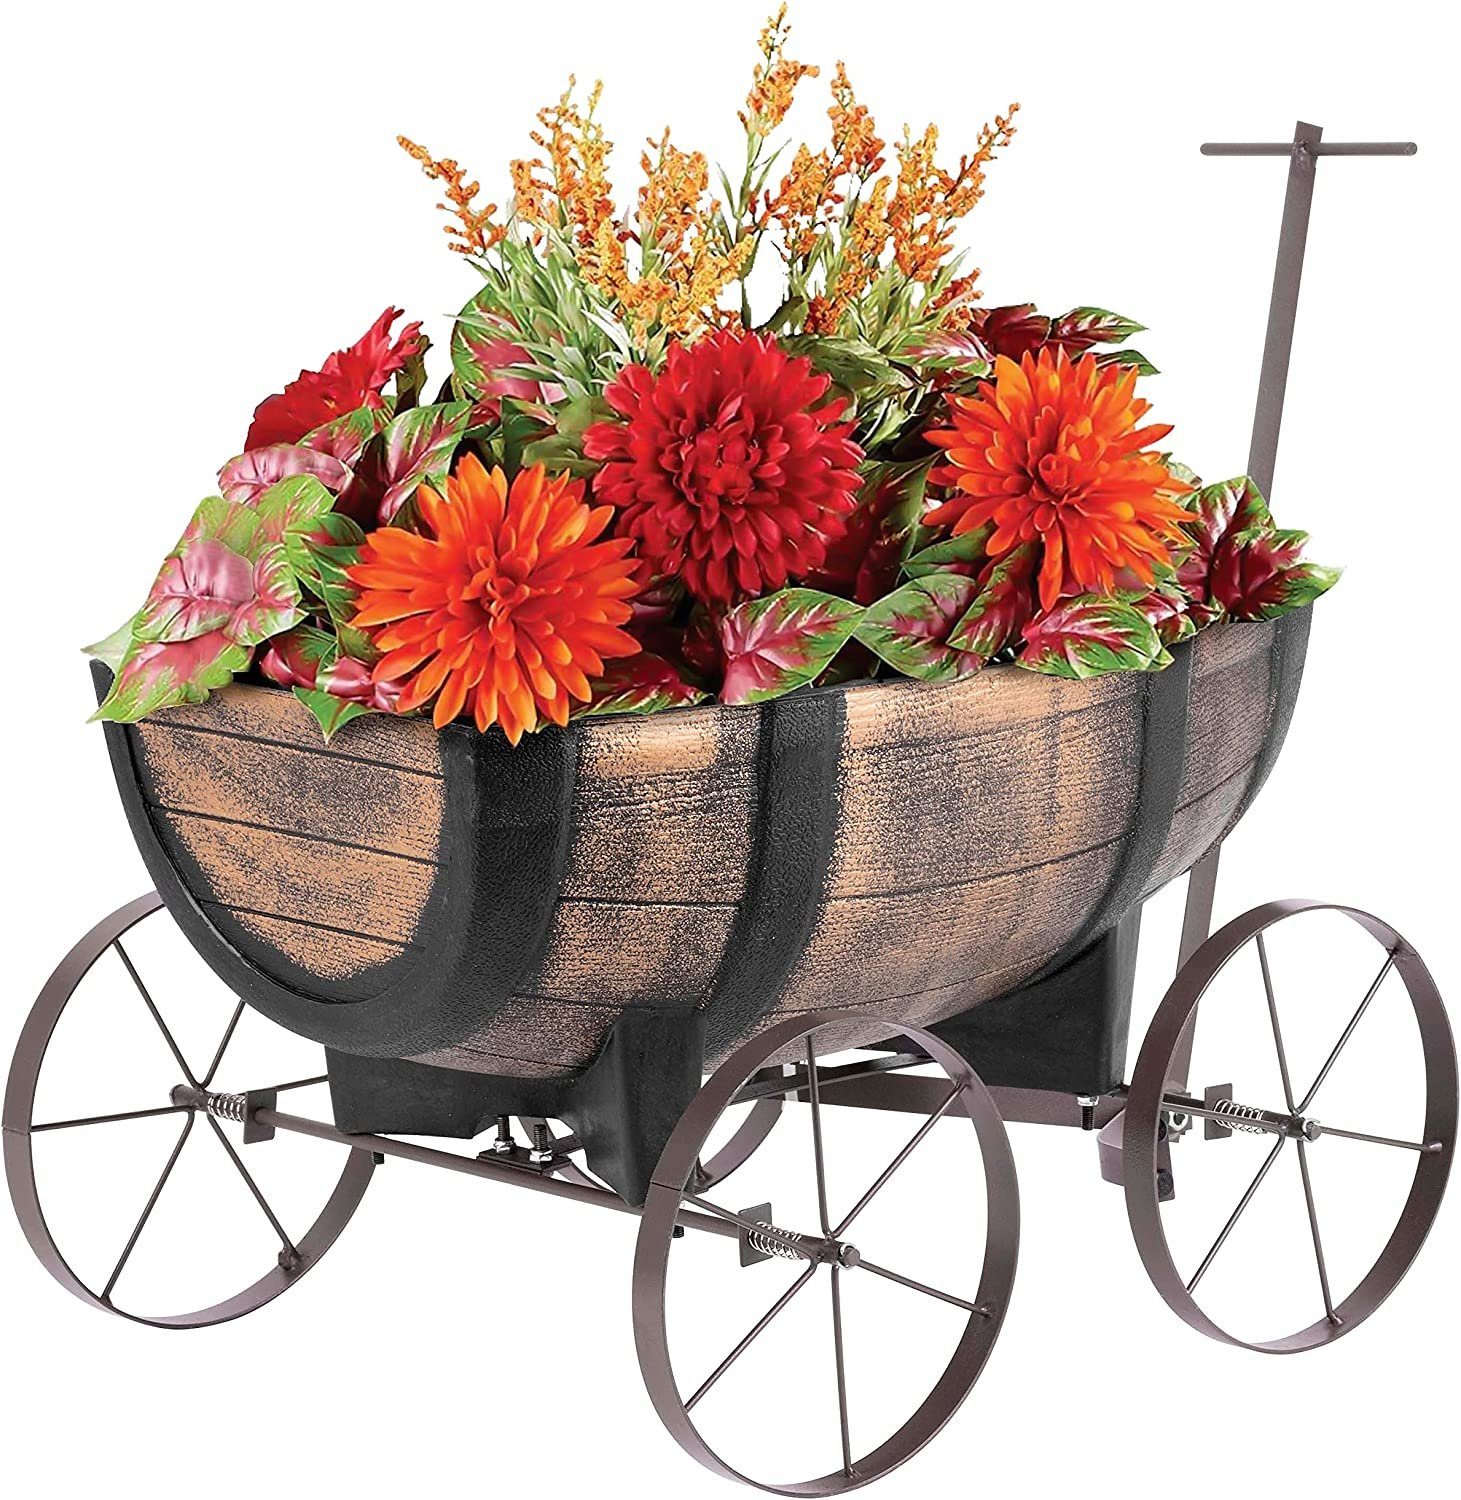 PROREGAL® Blumentopf Pflanzenwagen Whiskyfass, Maße 41x29x19cm, Blumenwagen auf Rädern